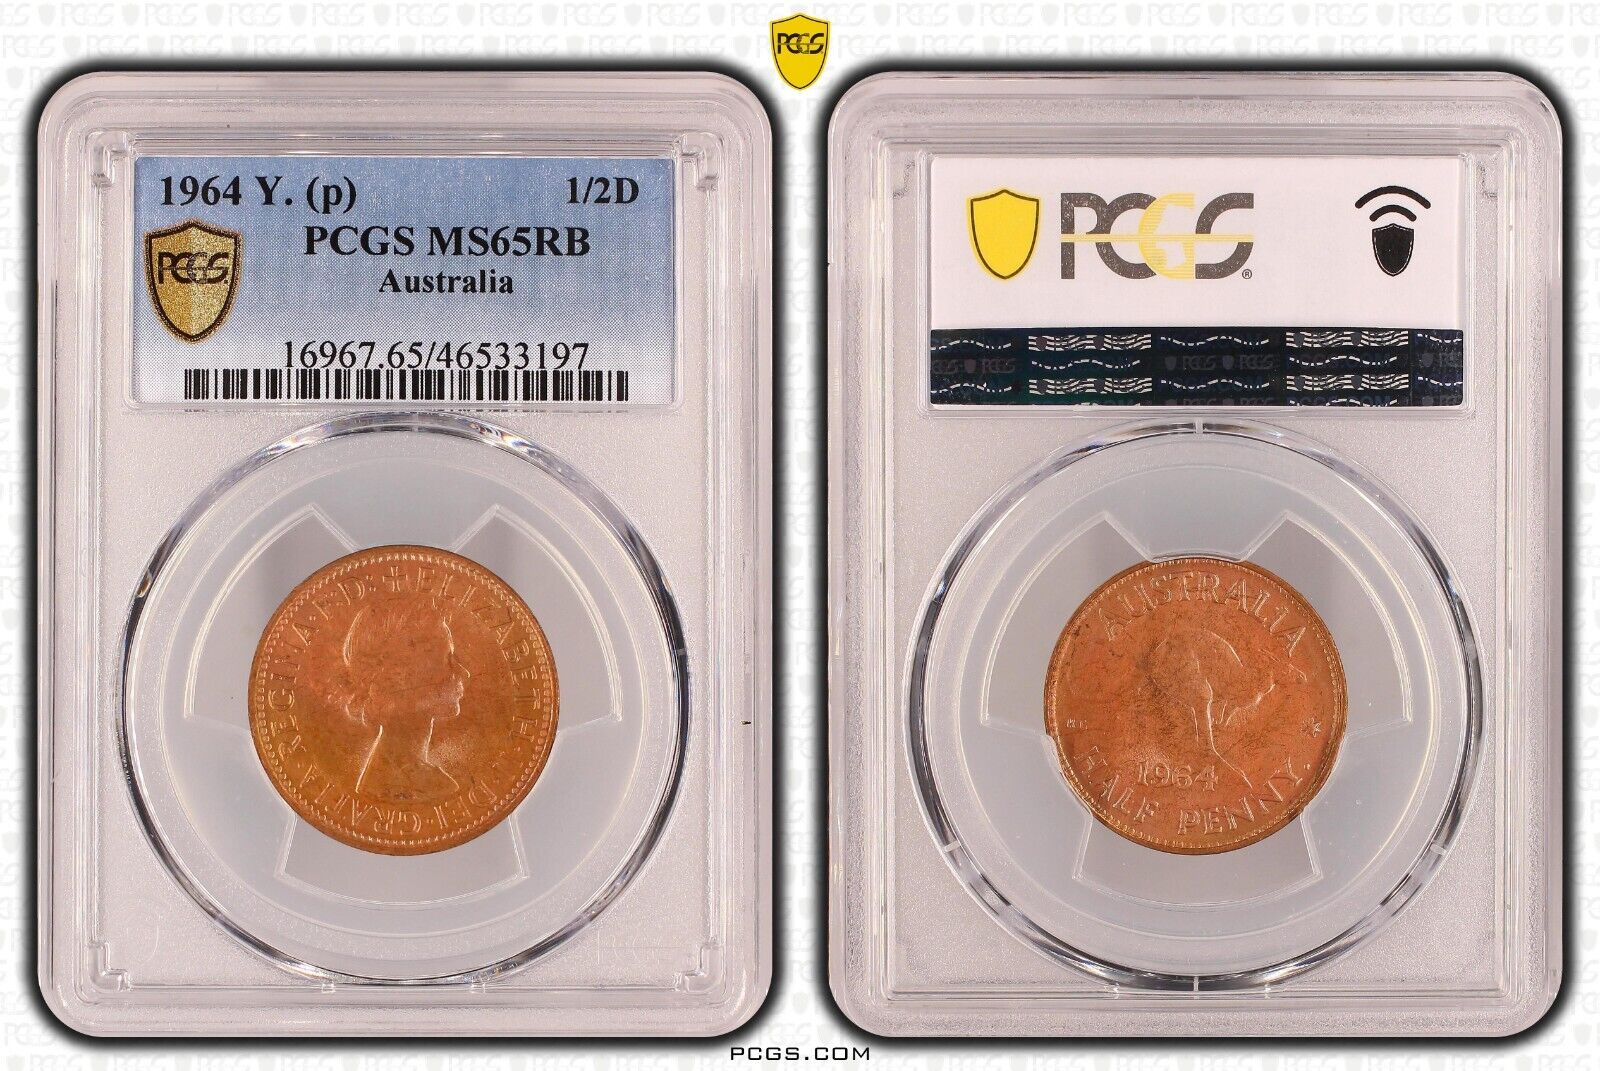 1964 Y. (p) Half Penny 1/2d Australia PCGS MS65RB GEM UNC #3762